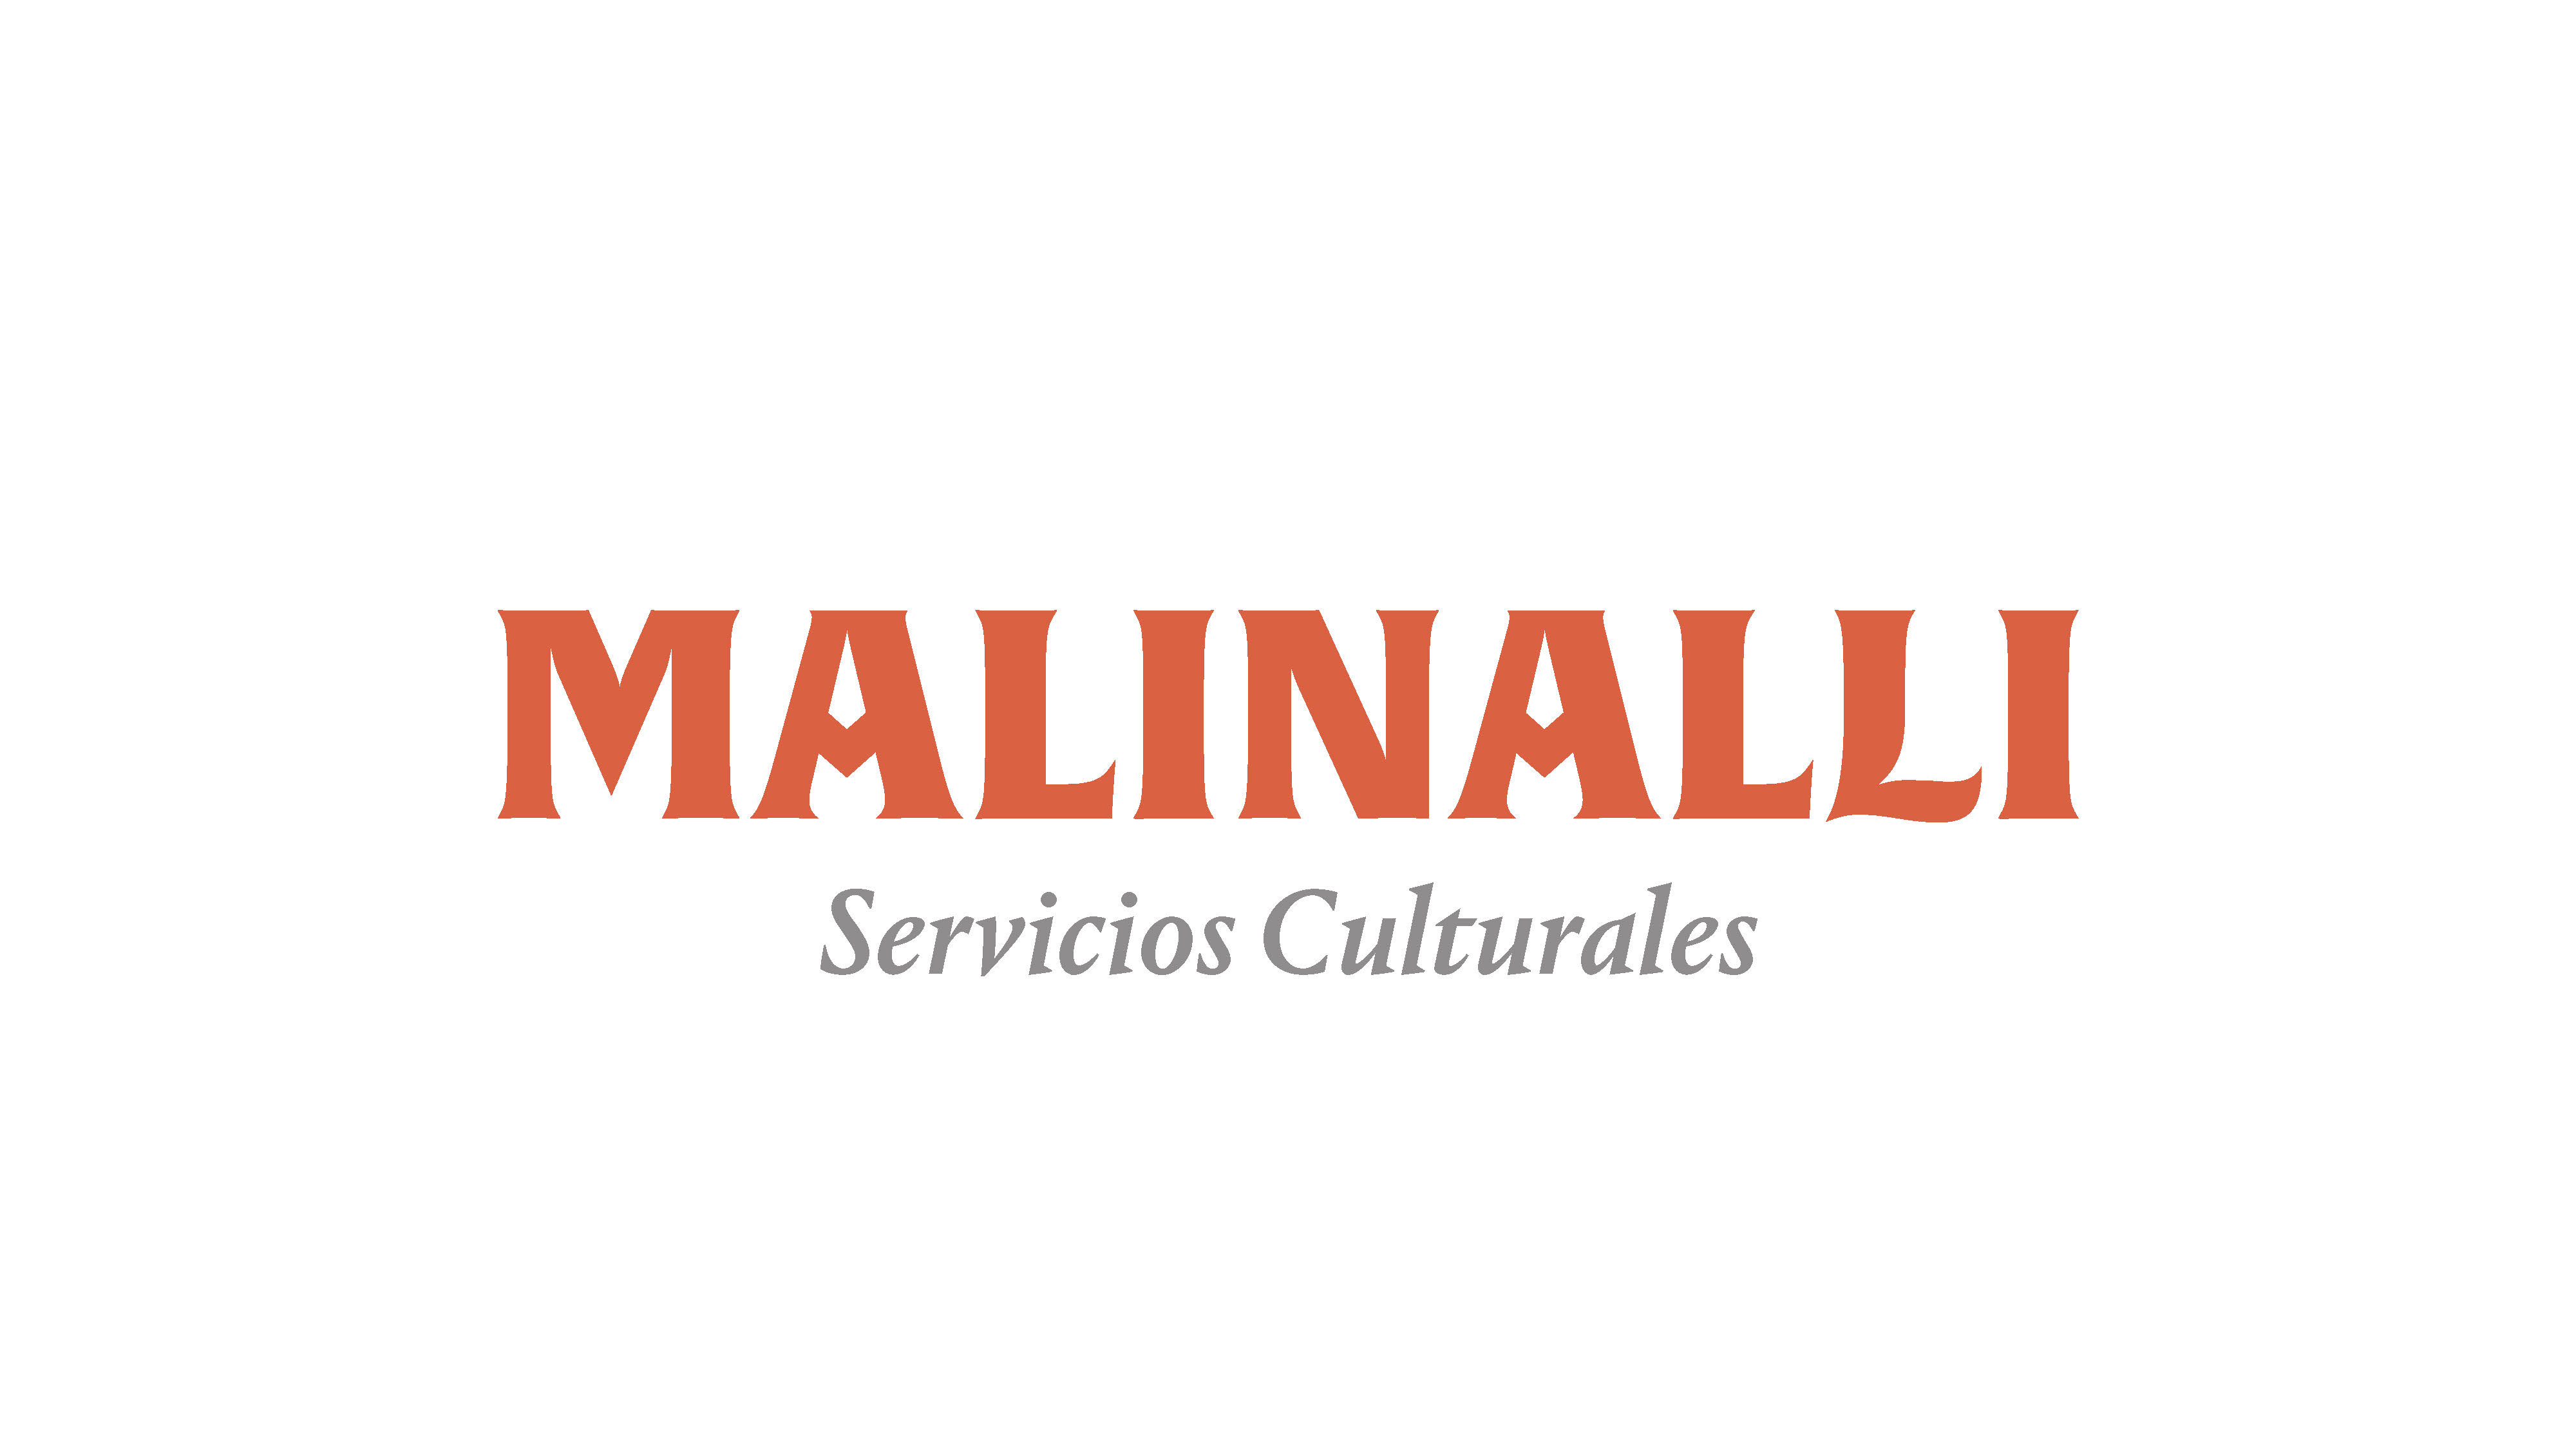 Malinalli